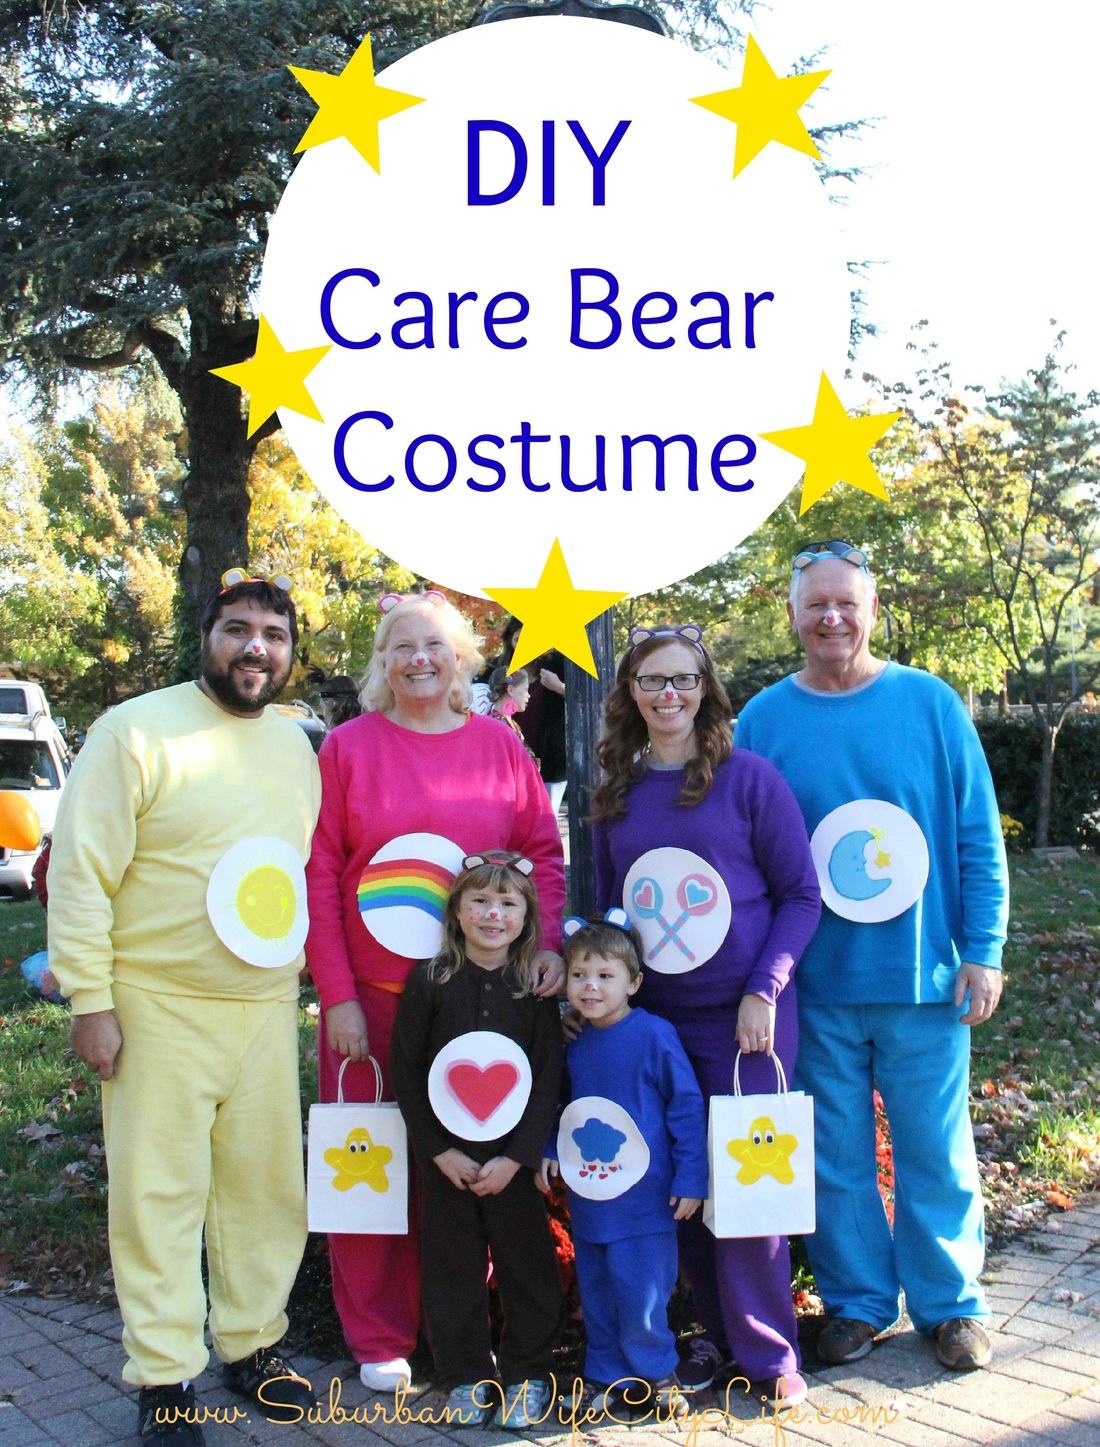 Alicia Gibbs: 12 DIY Family Themed Costumes - Care Bears